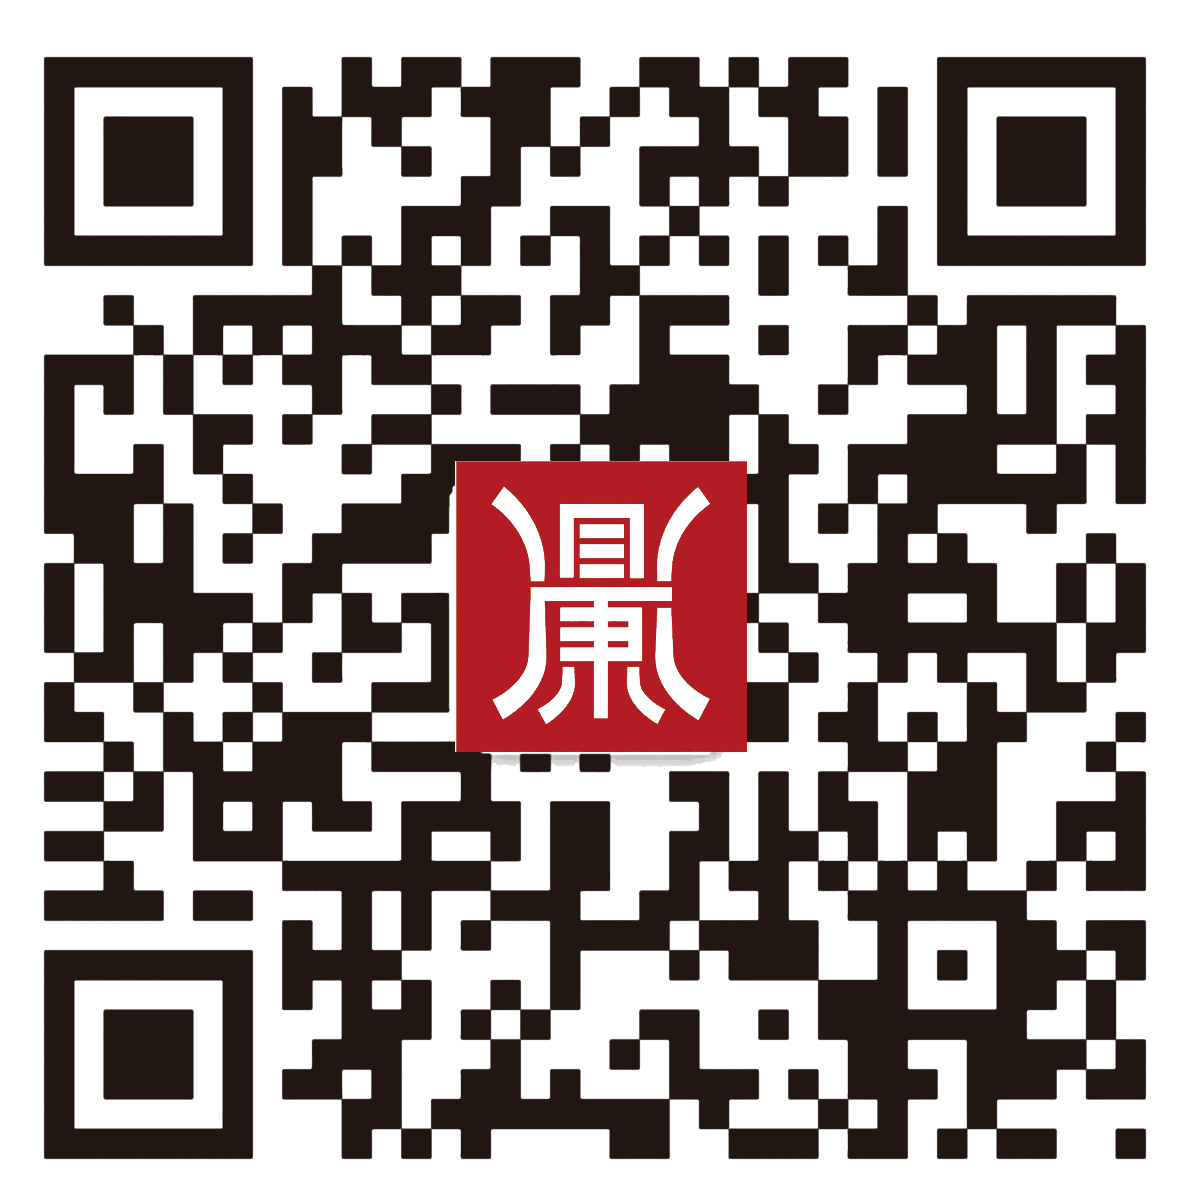 Scanning focuses on our WeChat platform